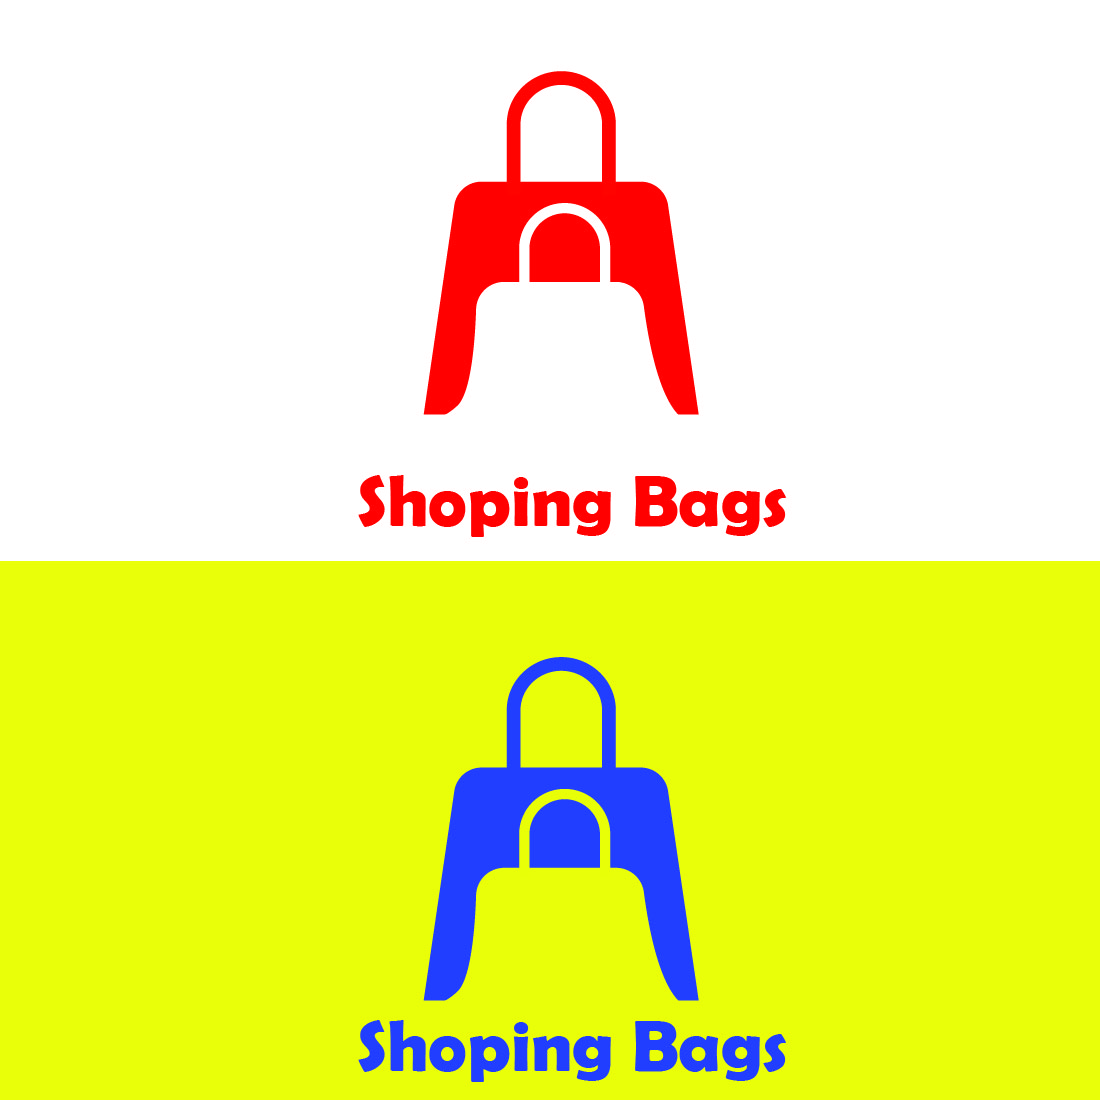 shopping bags1 01 756